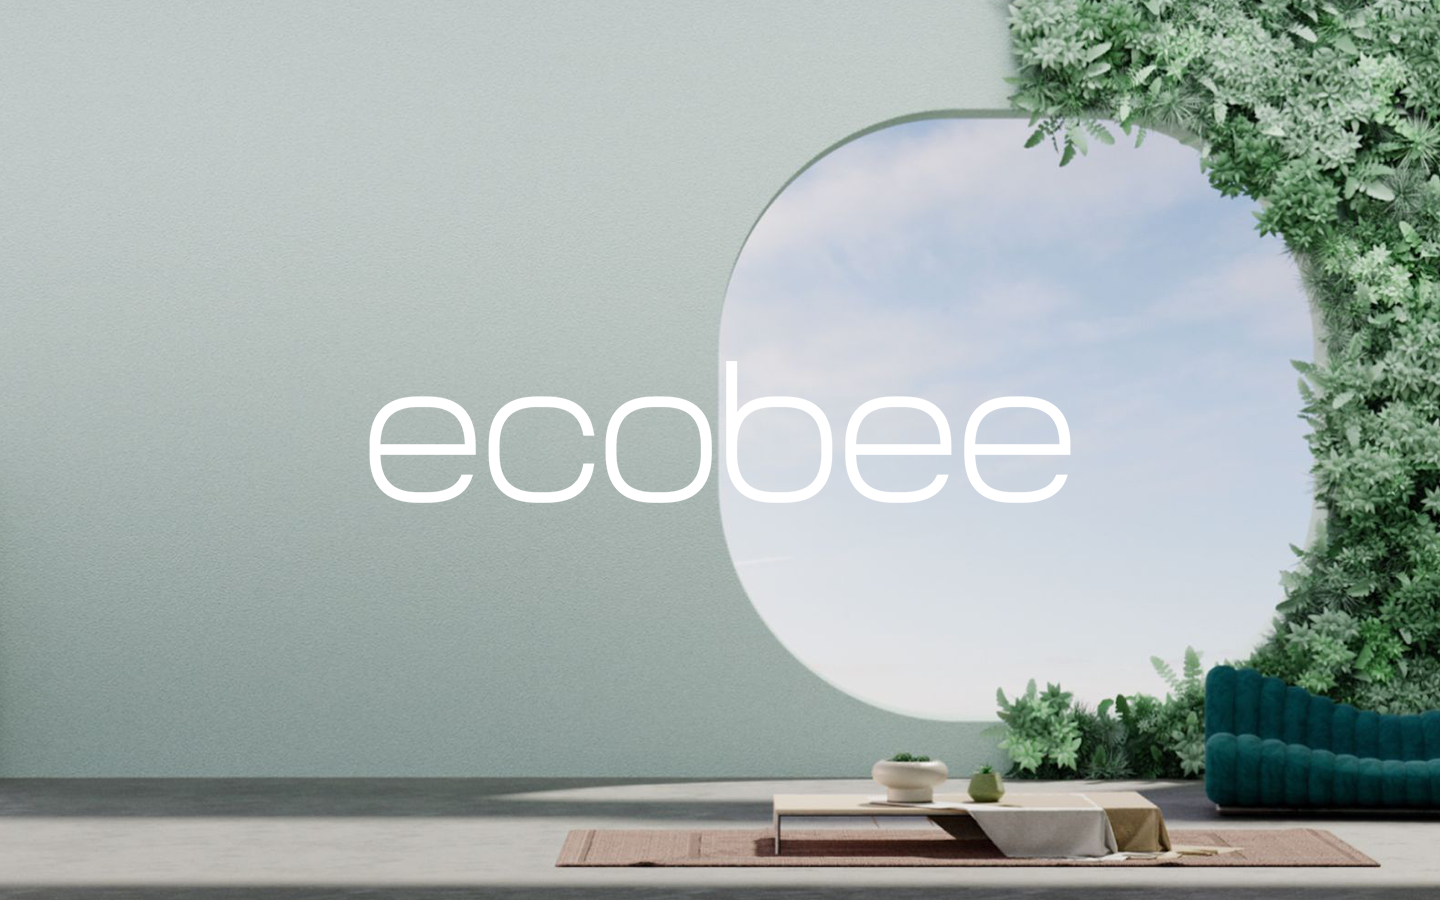 ecobee brand imagery.